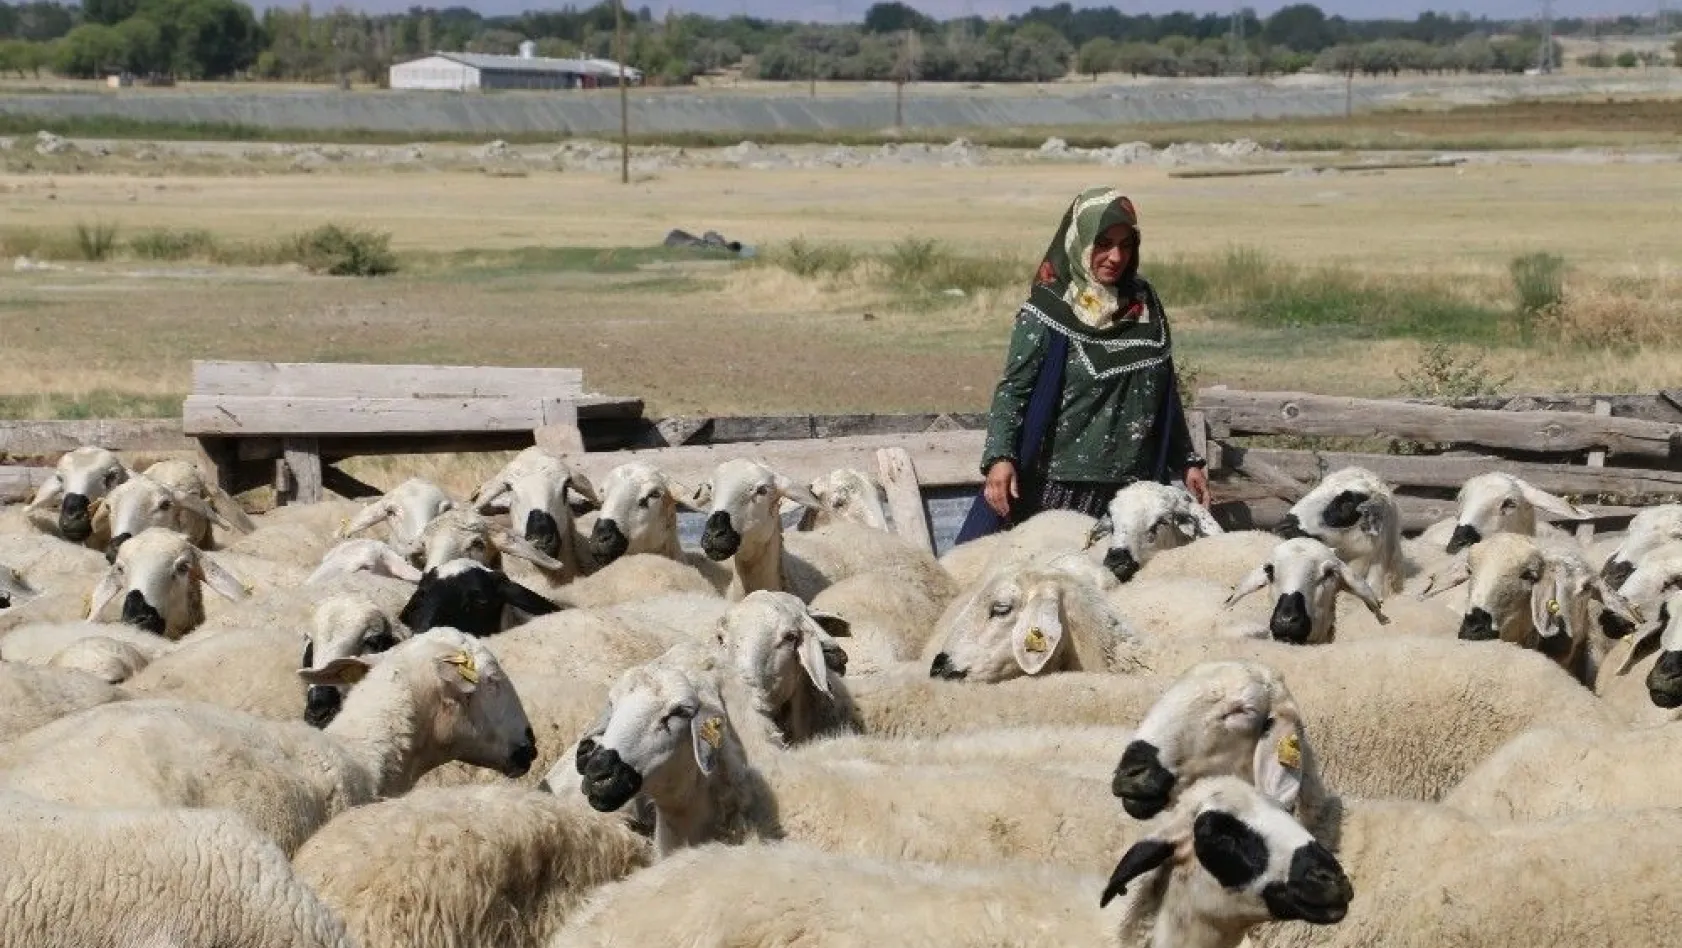 40 koyun çocuklarının geleceği açısından umut oldu
